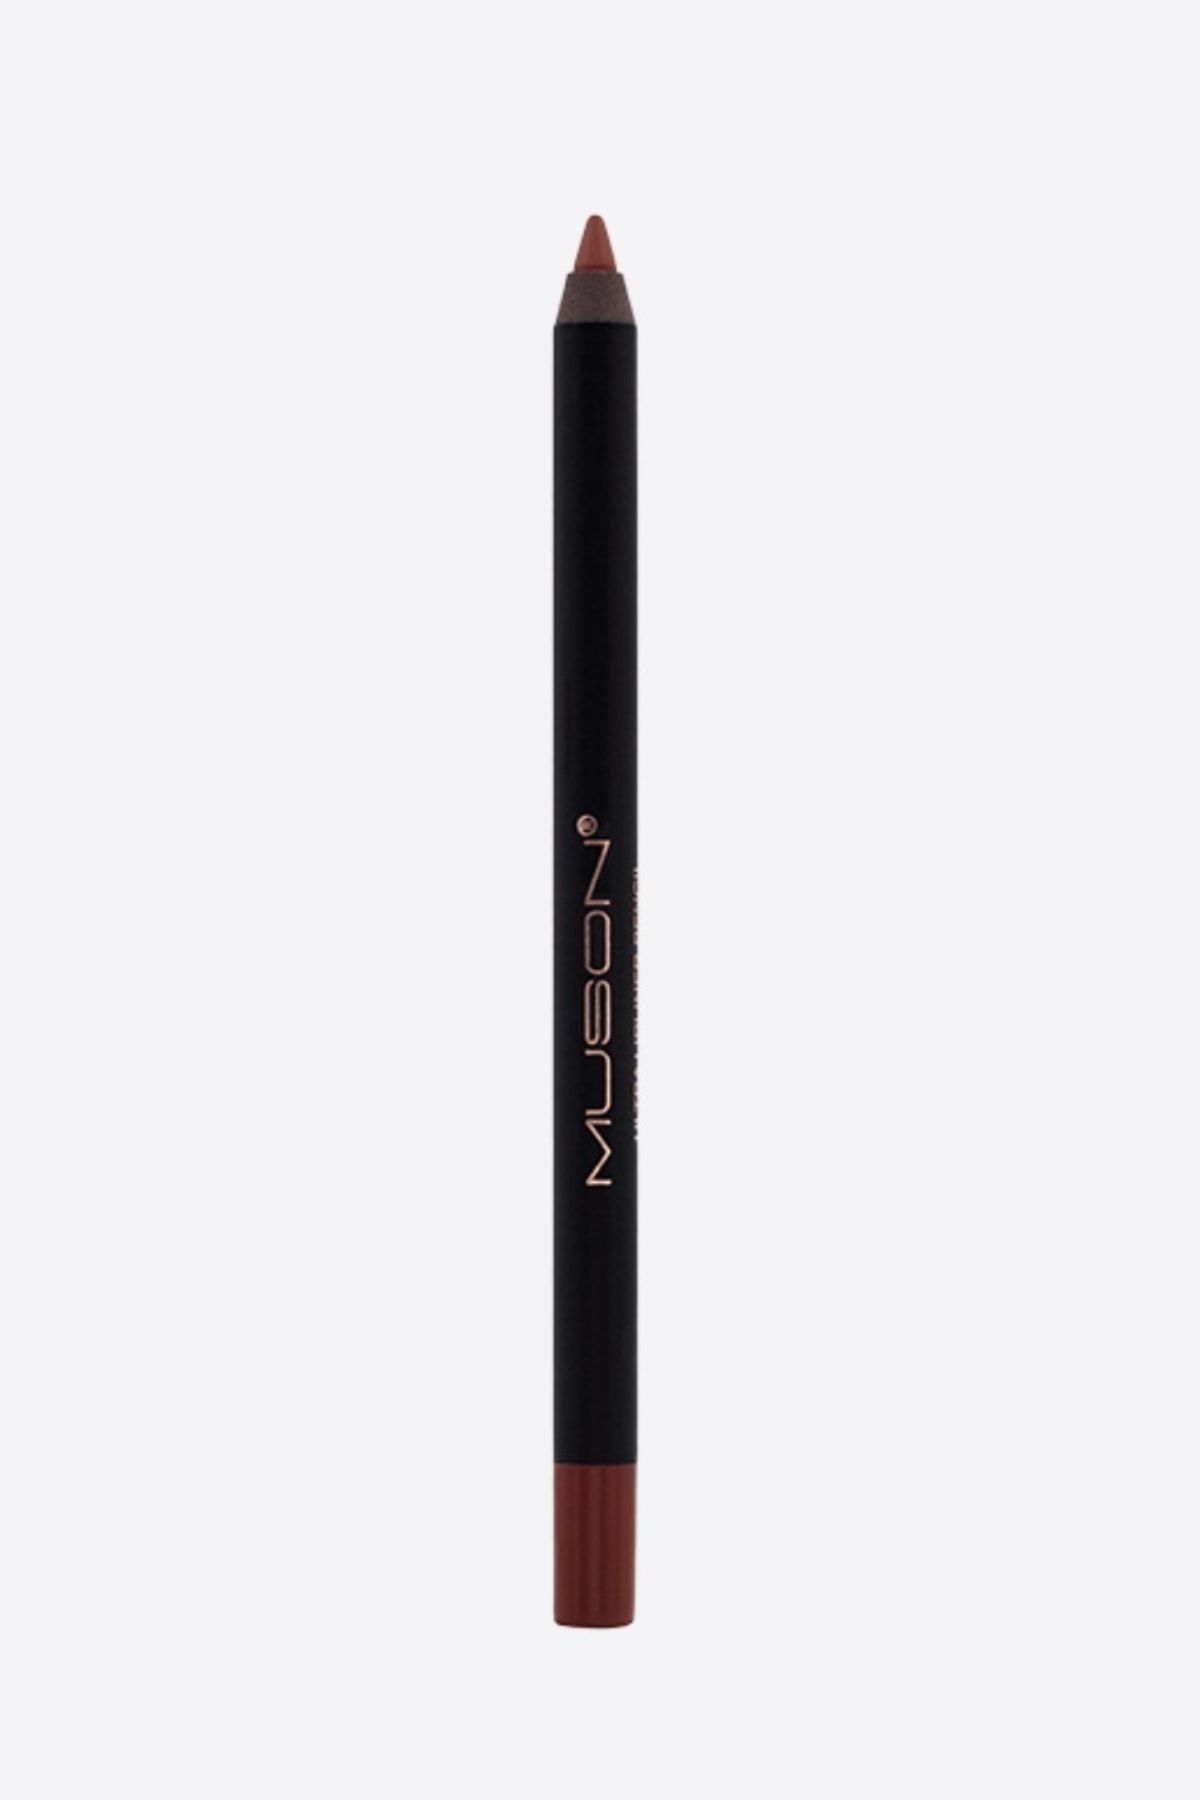 Muson 204 Soft Brown Ultra Lipliner Pencil